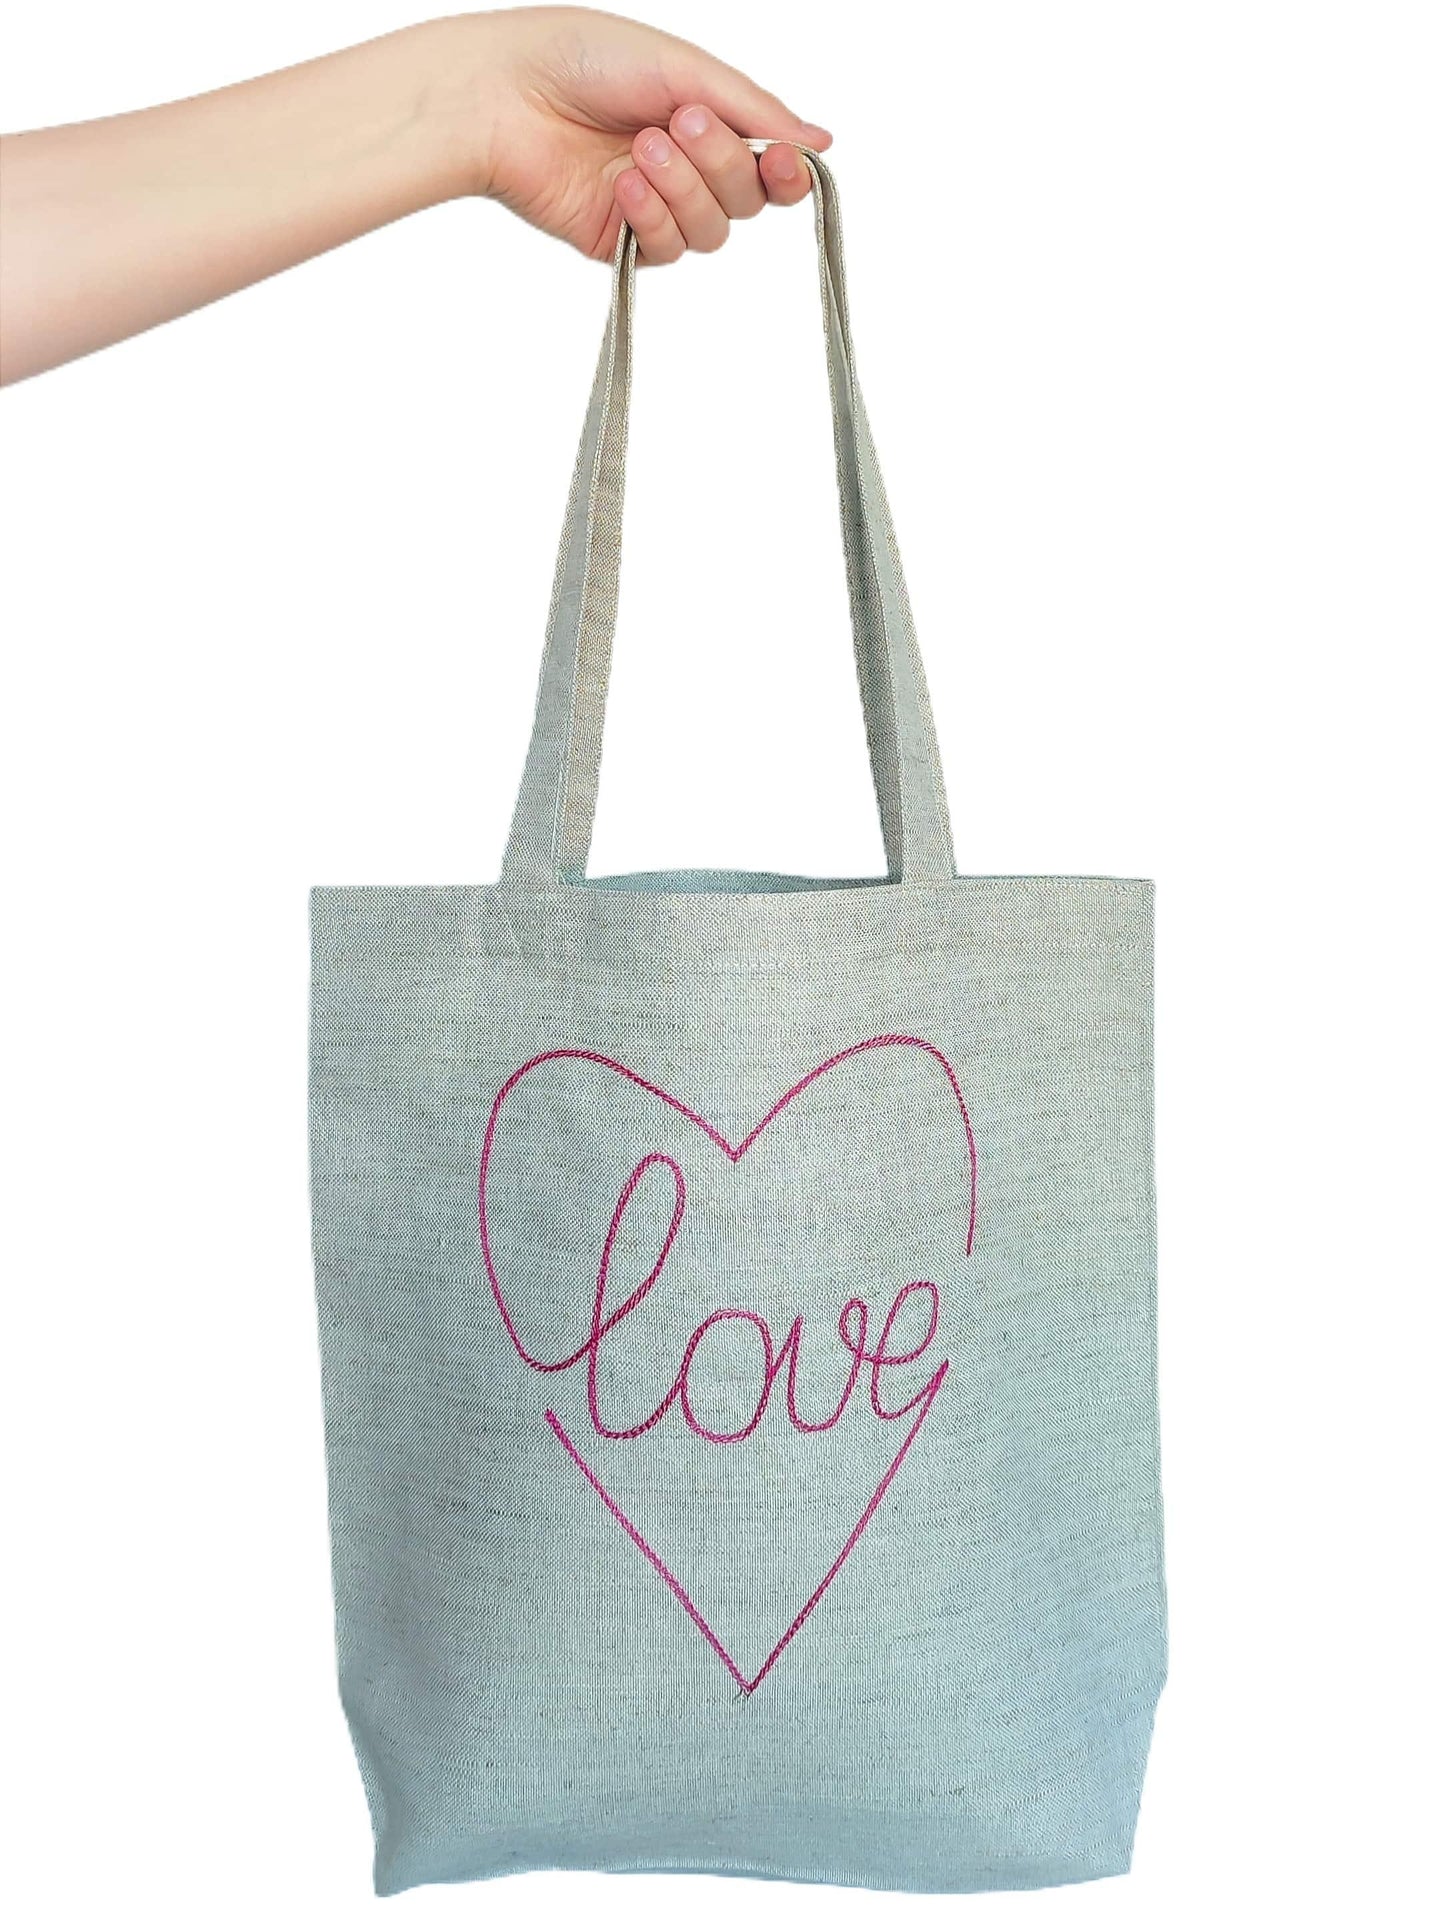 Shopping bag LOVE - Linen4me